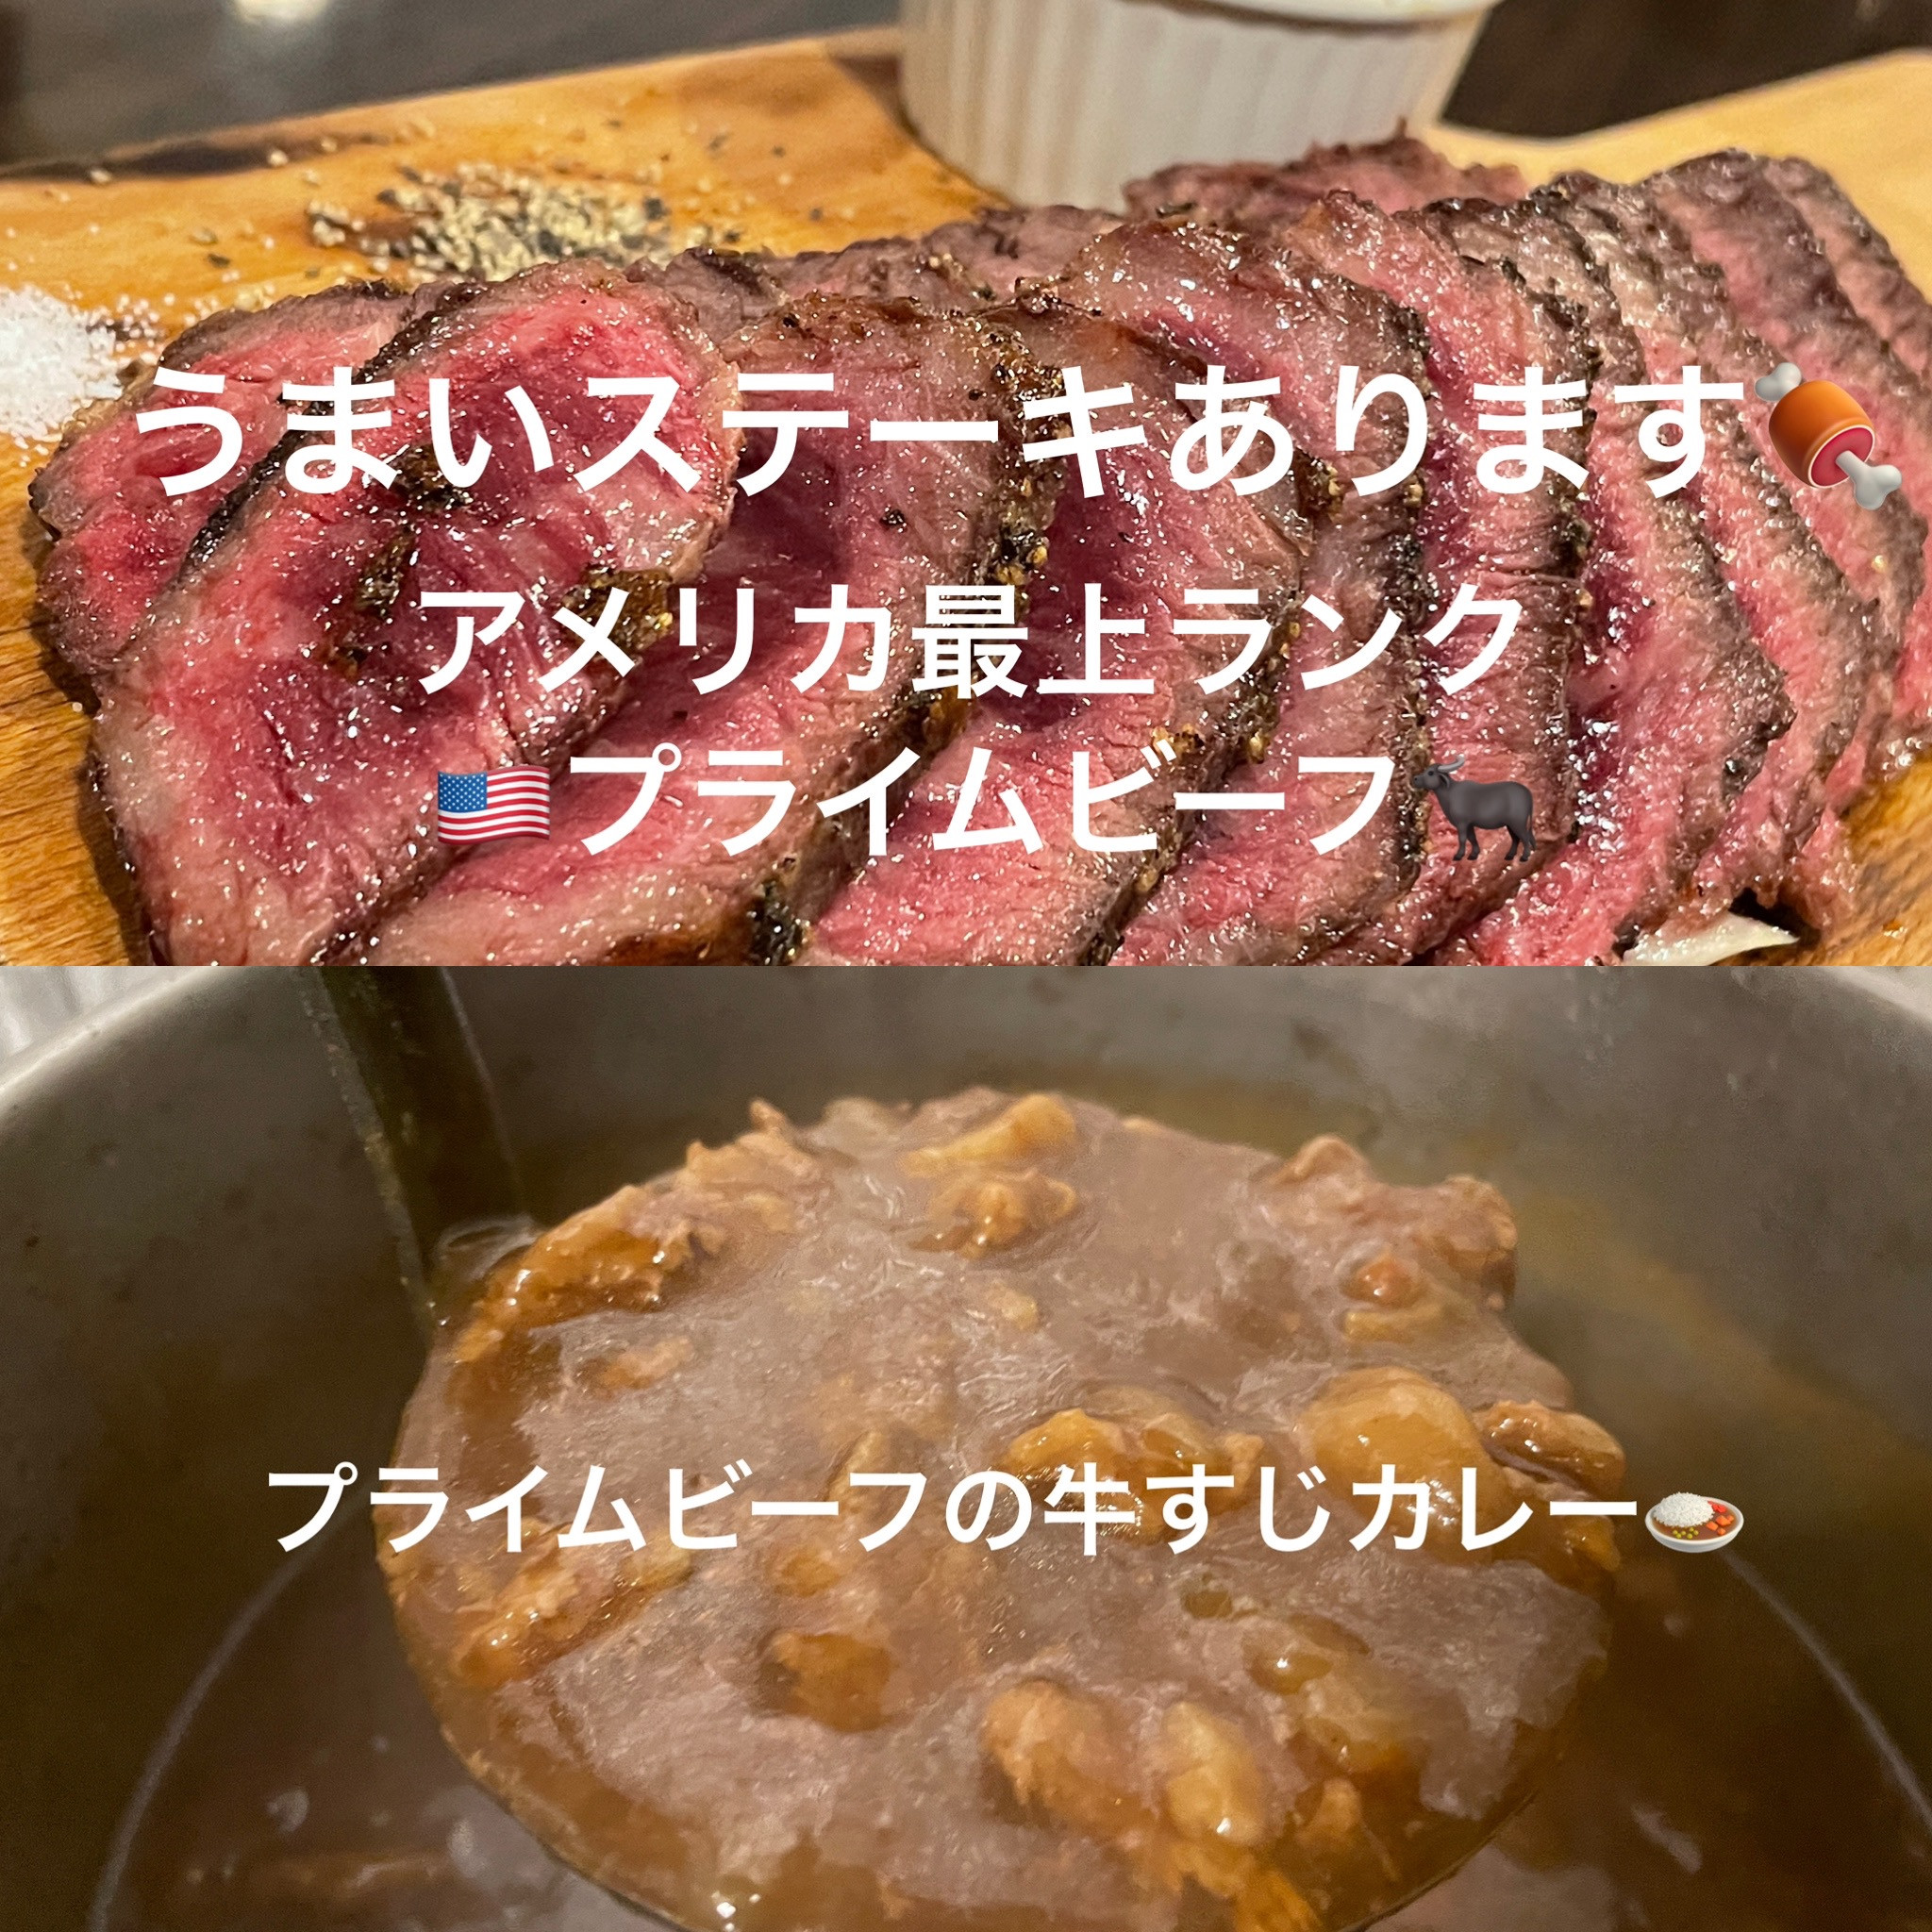 Amuのステーキと牛すじカレー